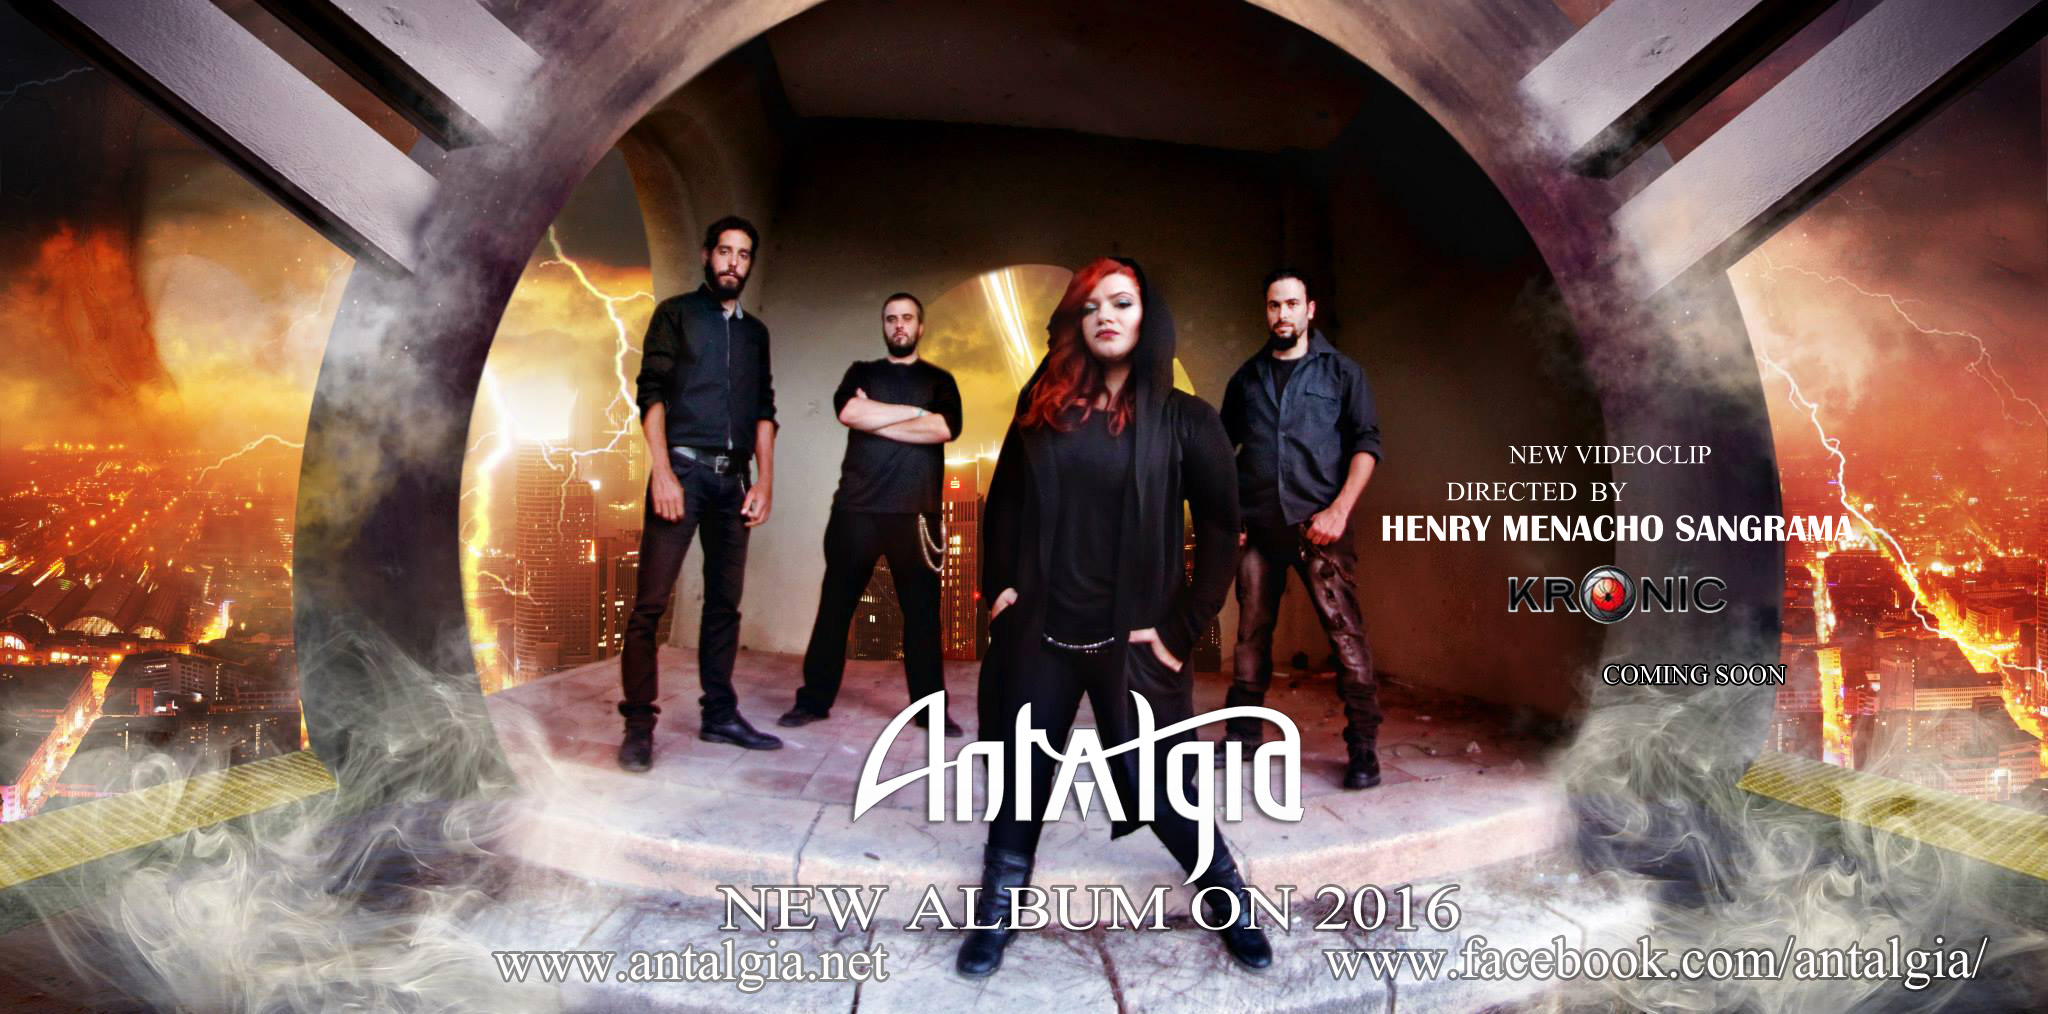 Antalgia presentan el videoclip de adelanto de su nuevo disco